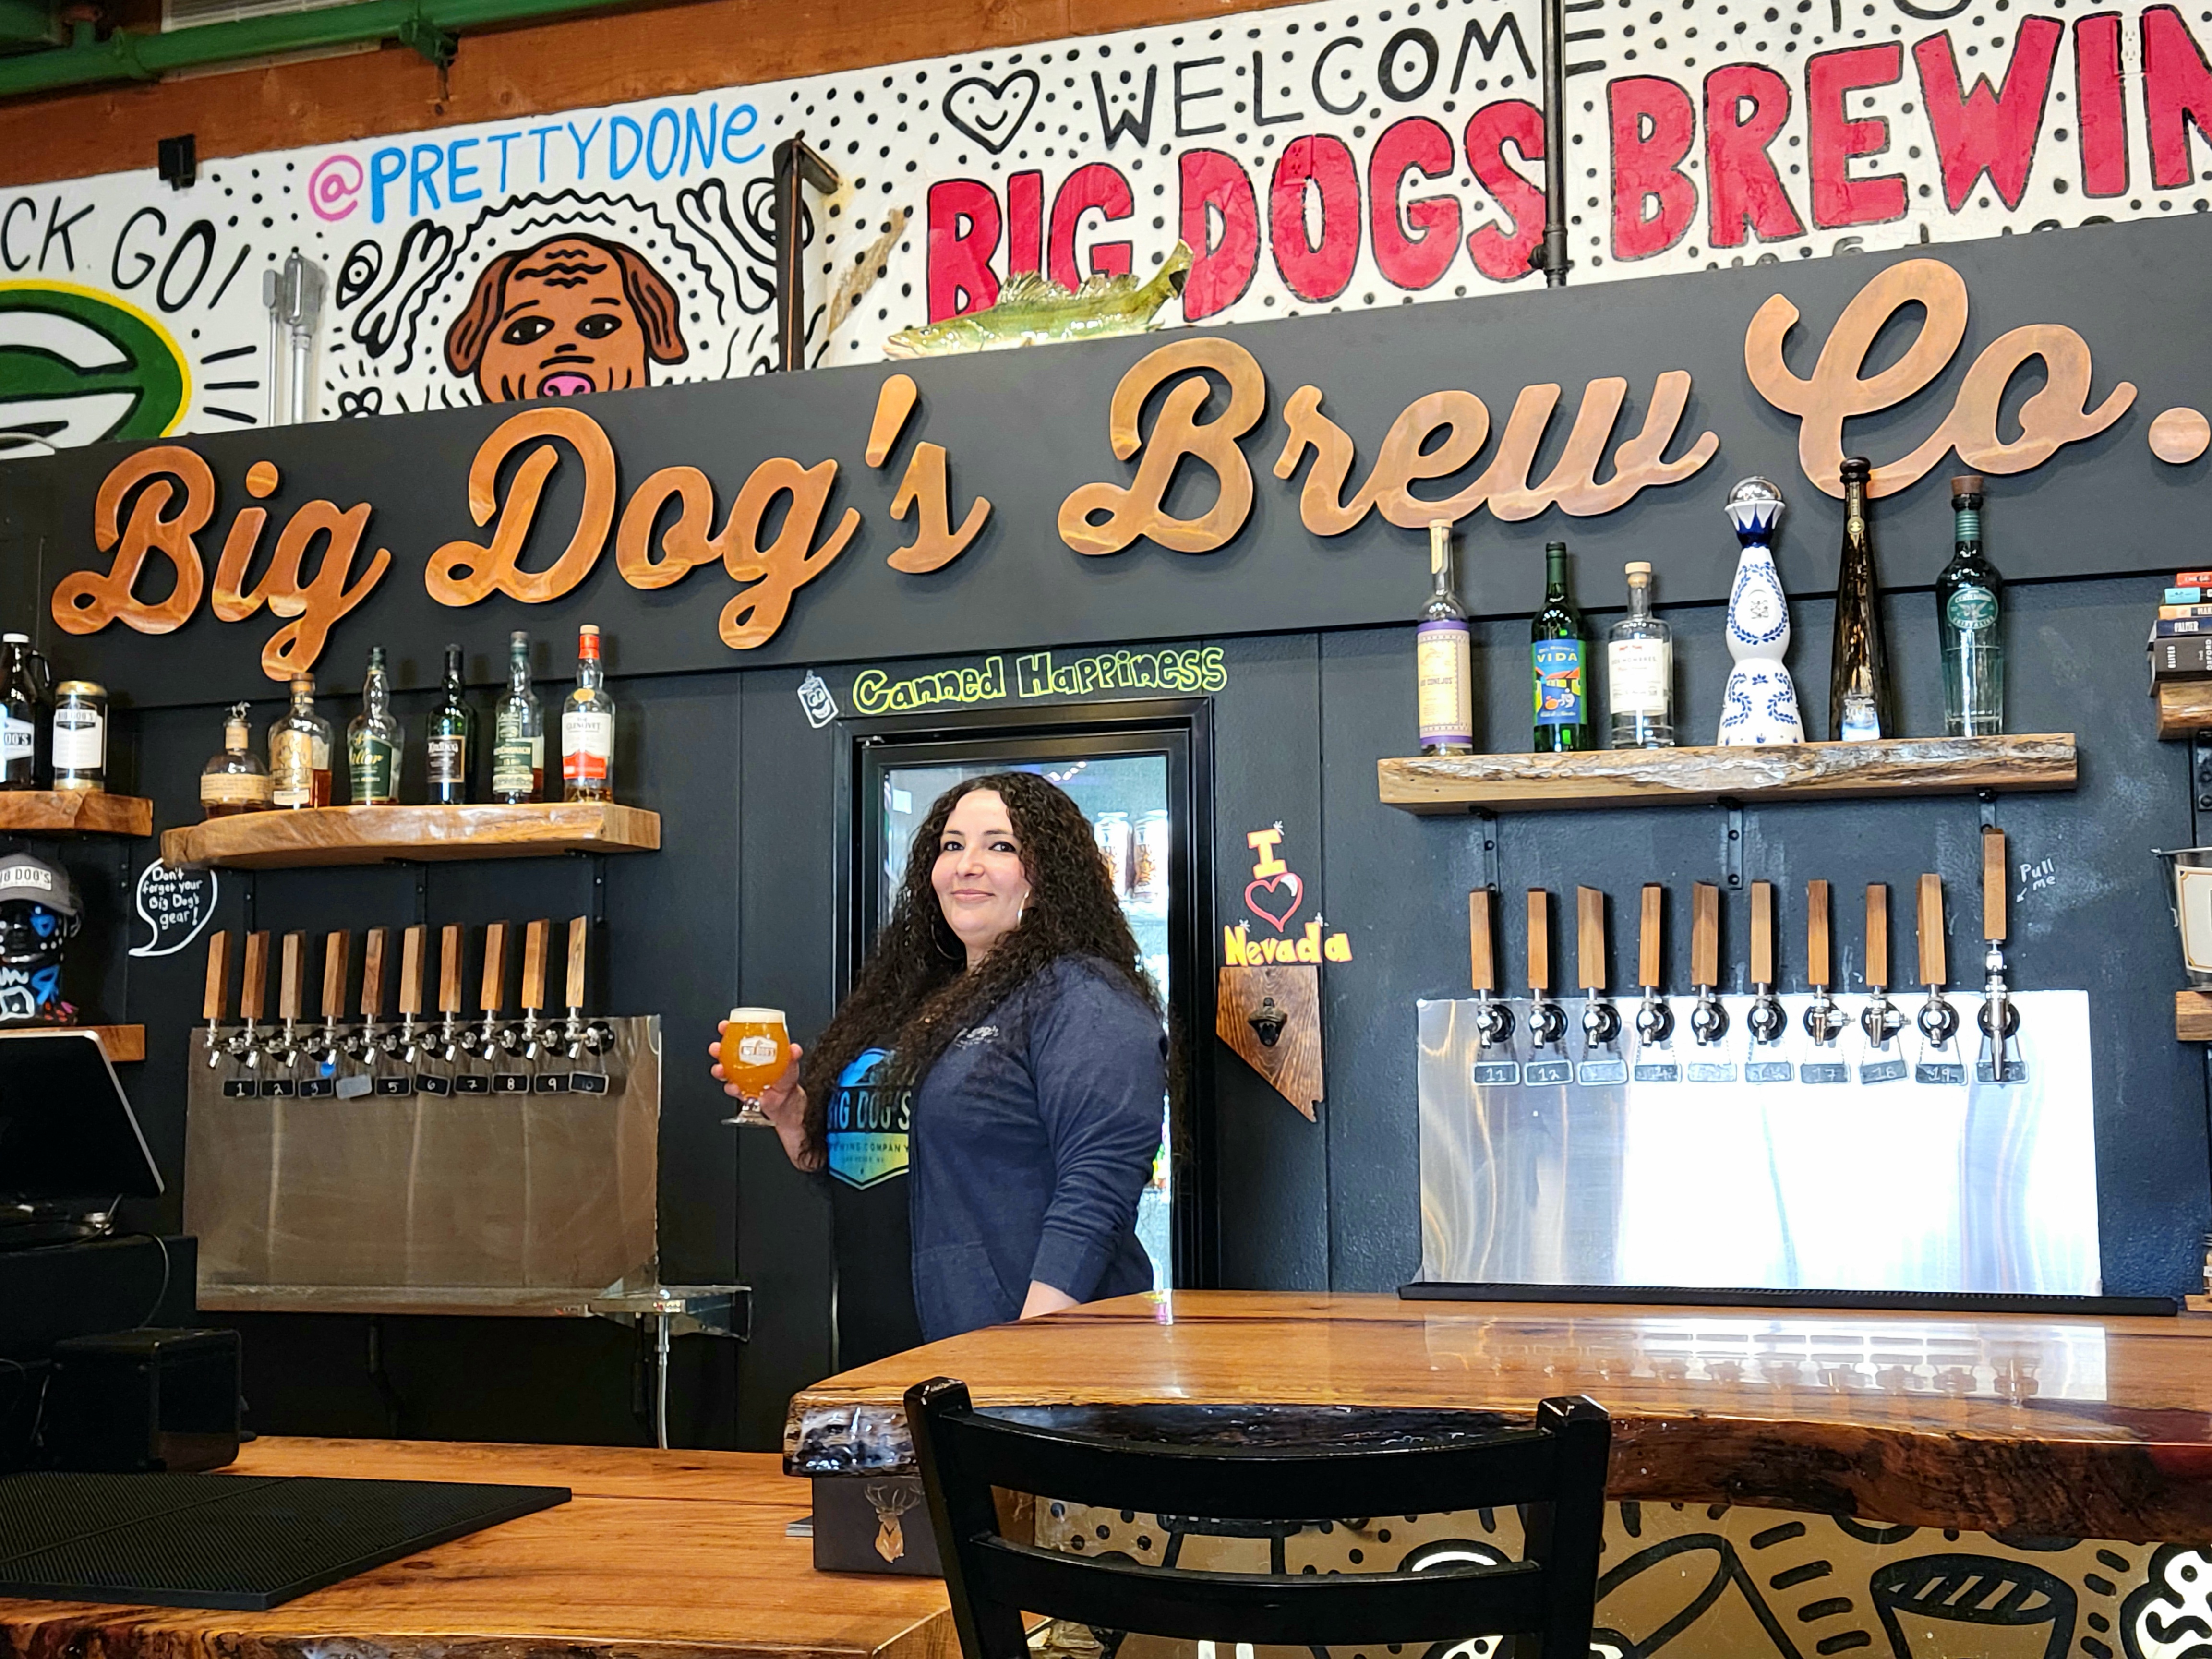 The bar and taps at Big Dog's